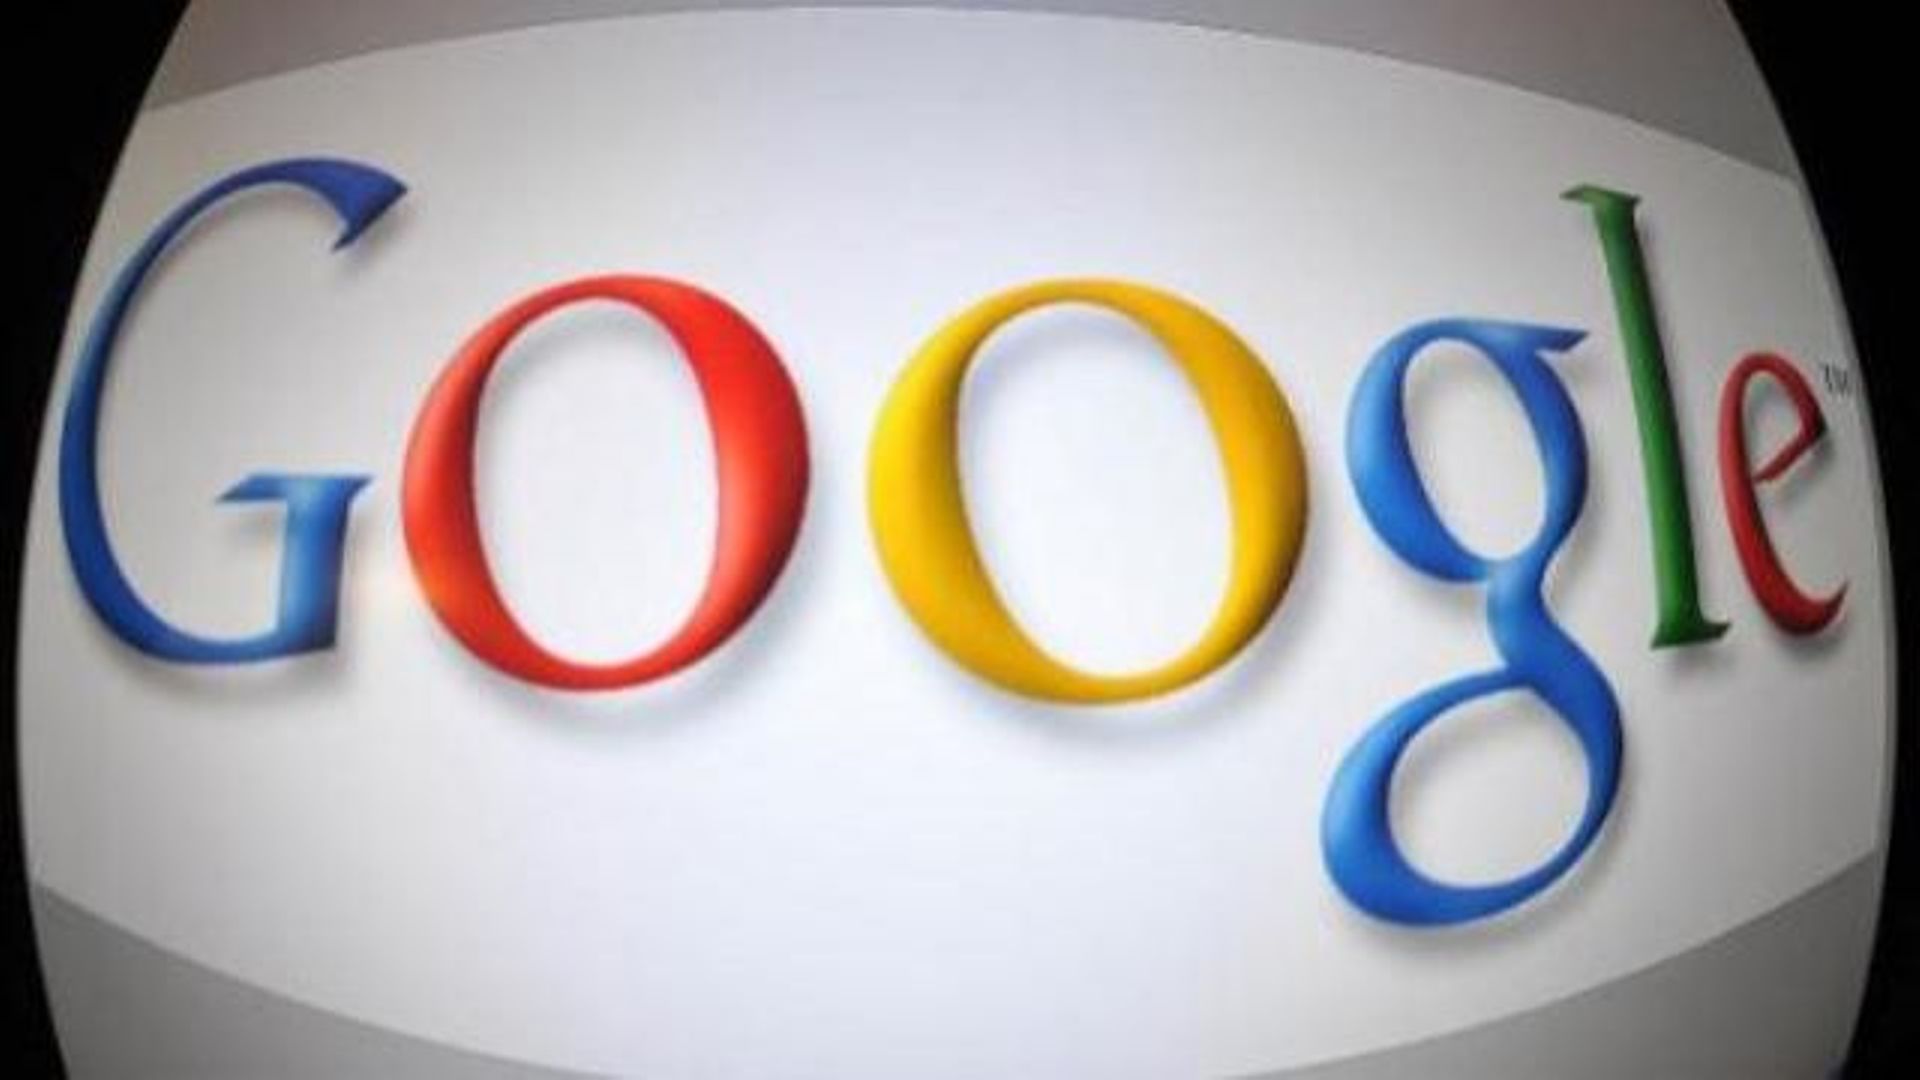 Google et Yahoo veulent de la transparence sur les demandes de données